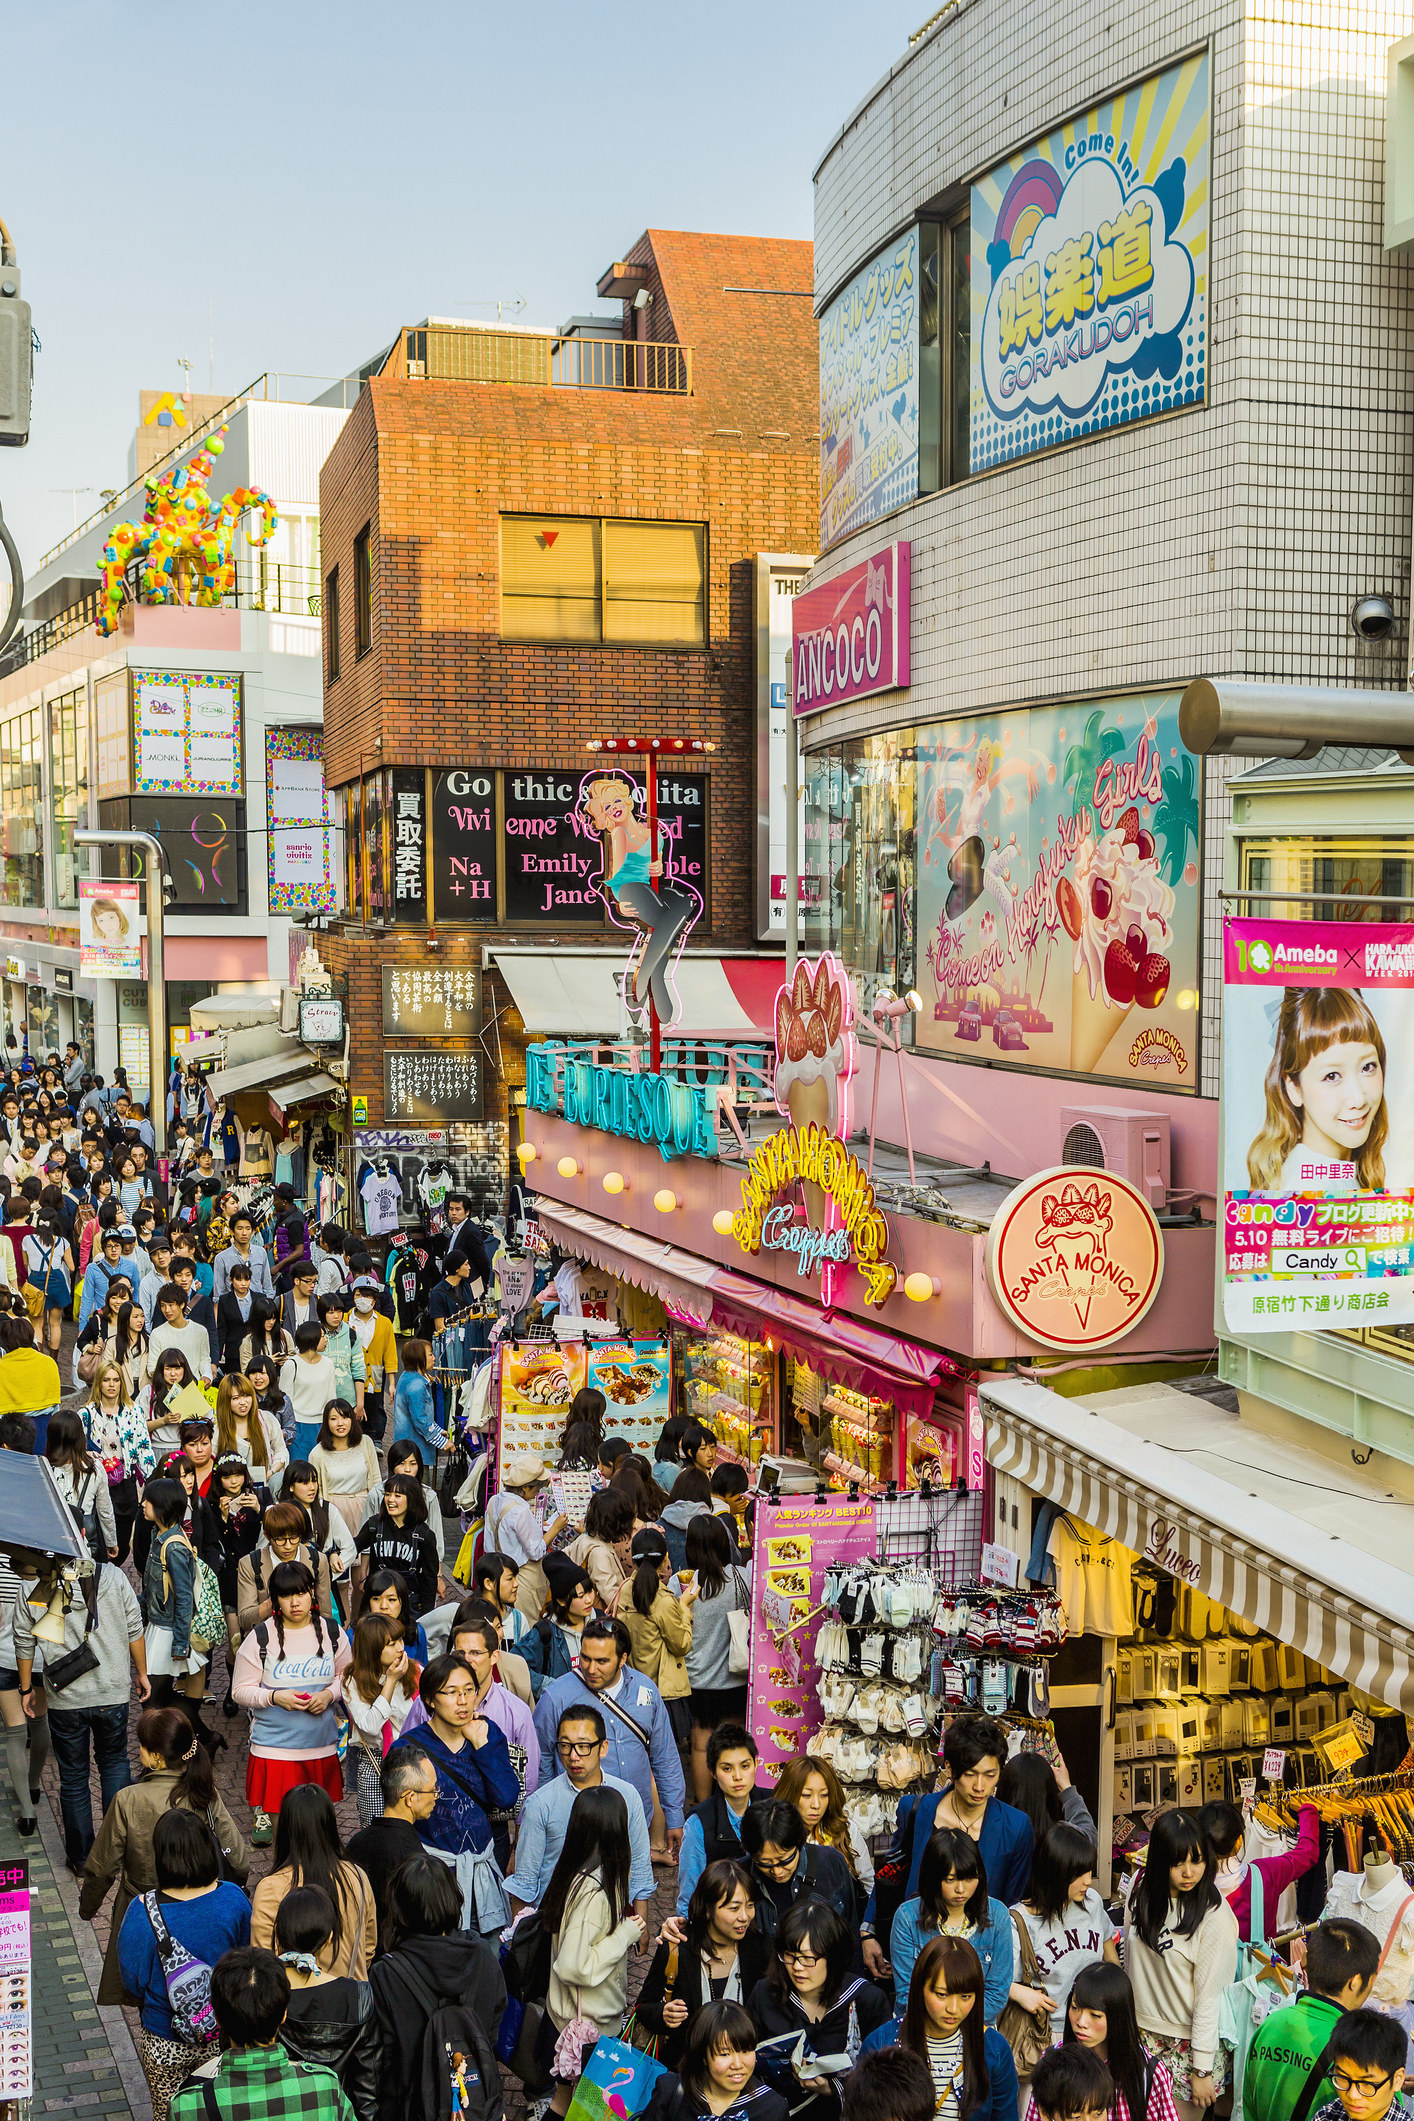 A busy crowd in Takeshita street in Harajuku.